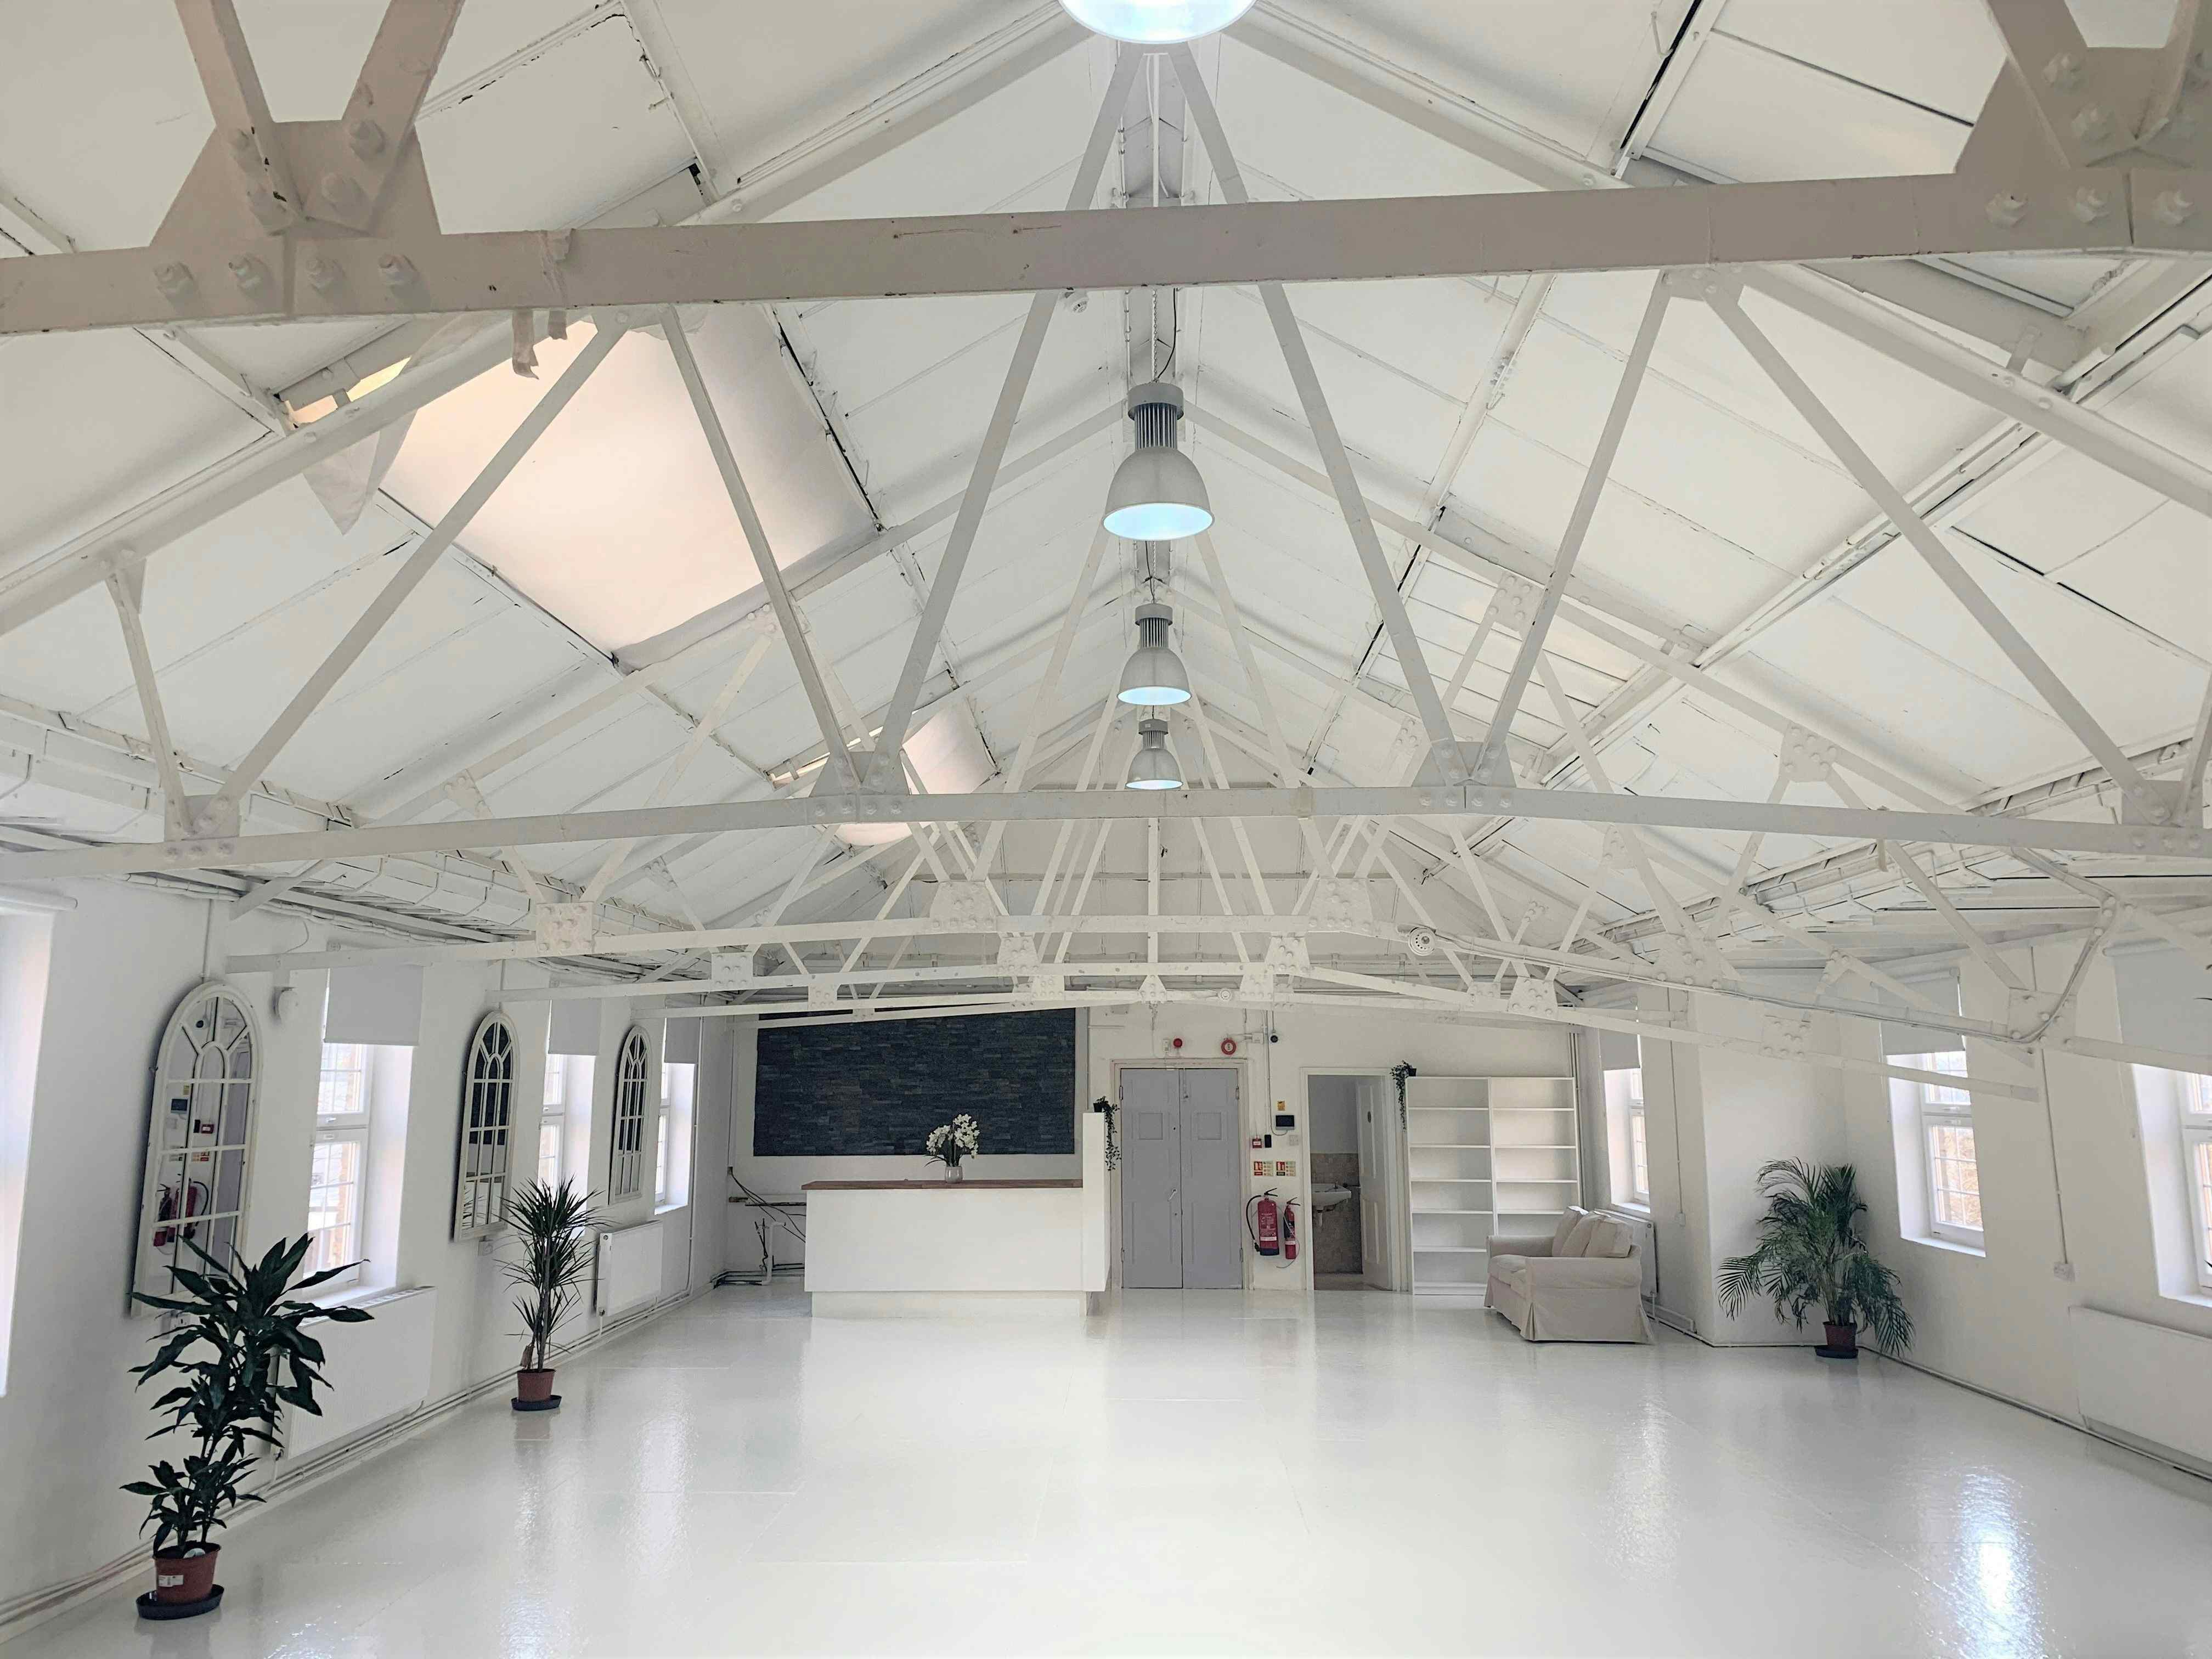 The Original White Loft, Agile Studios